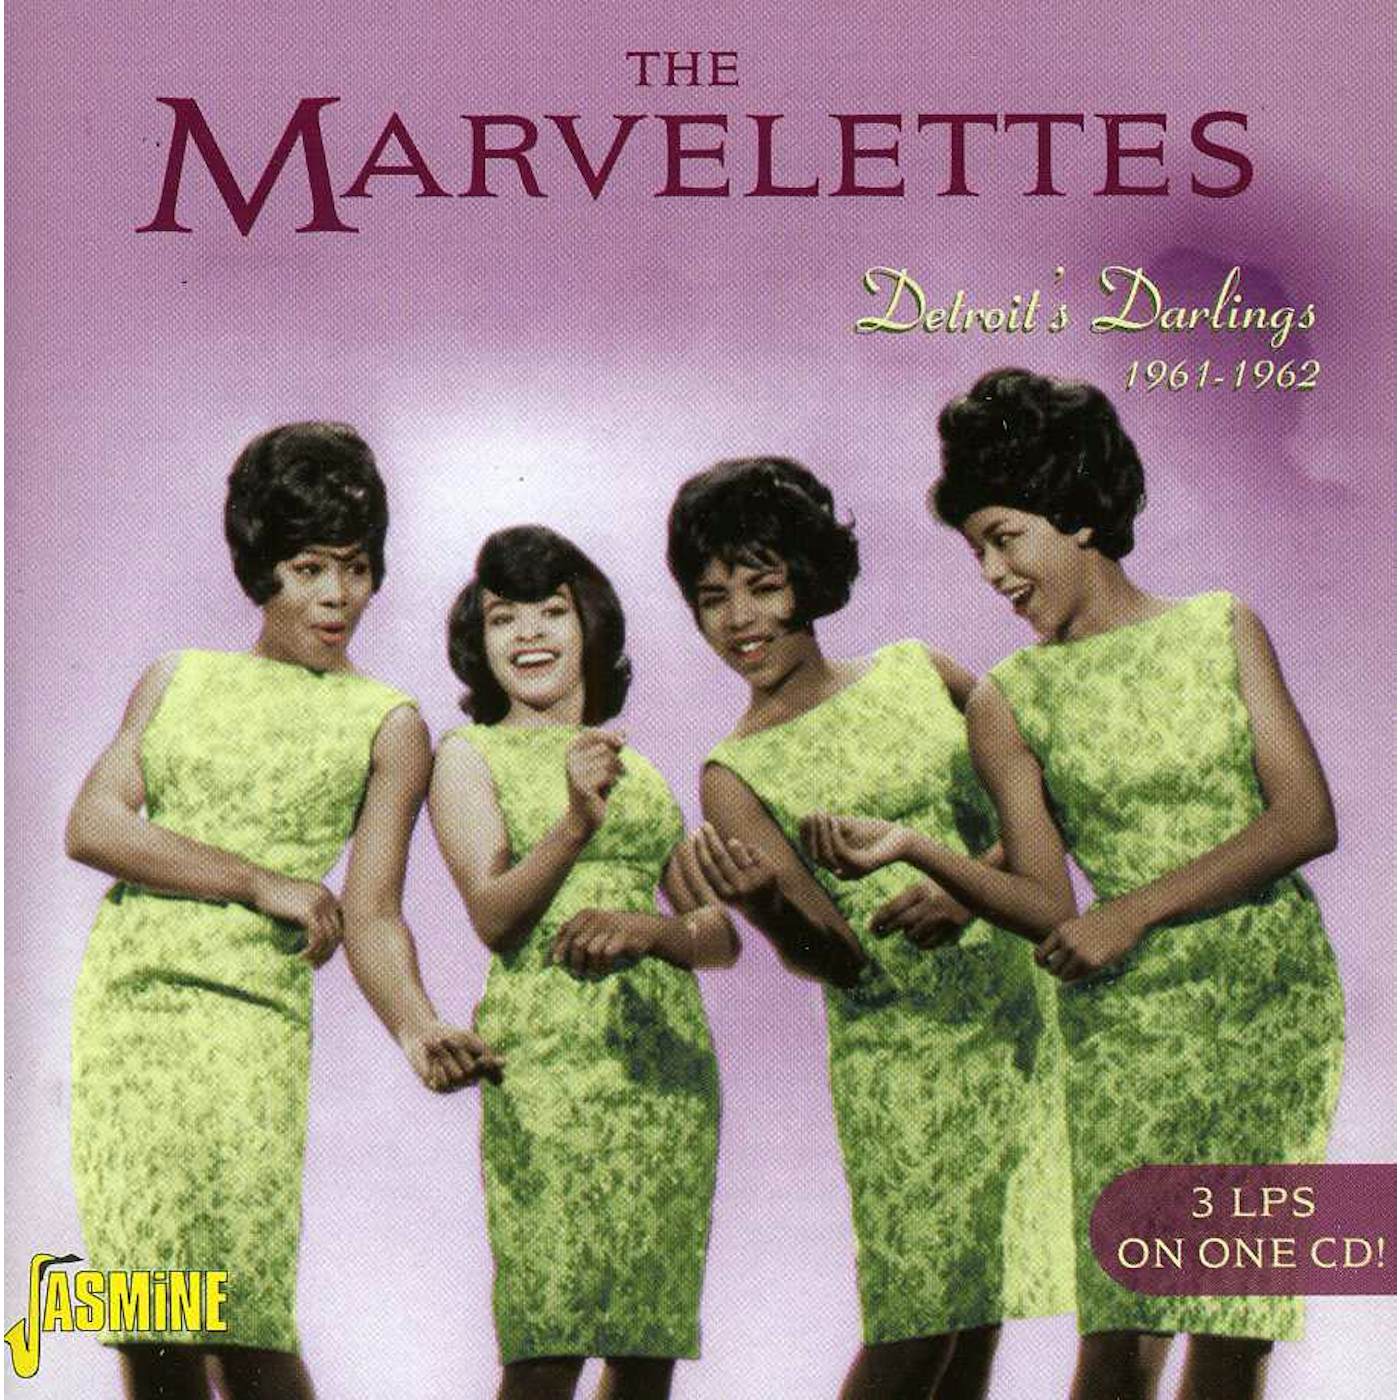 The Marvelettes DETROIT'S DARLINGS CD